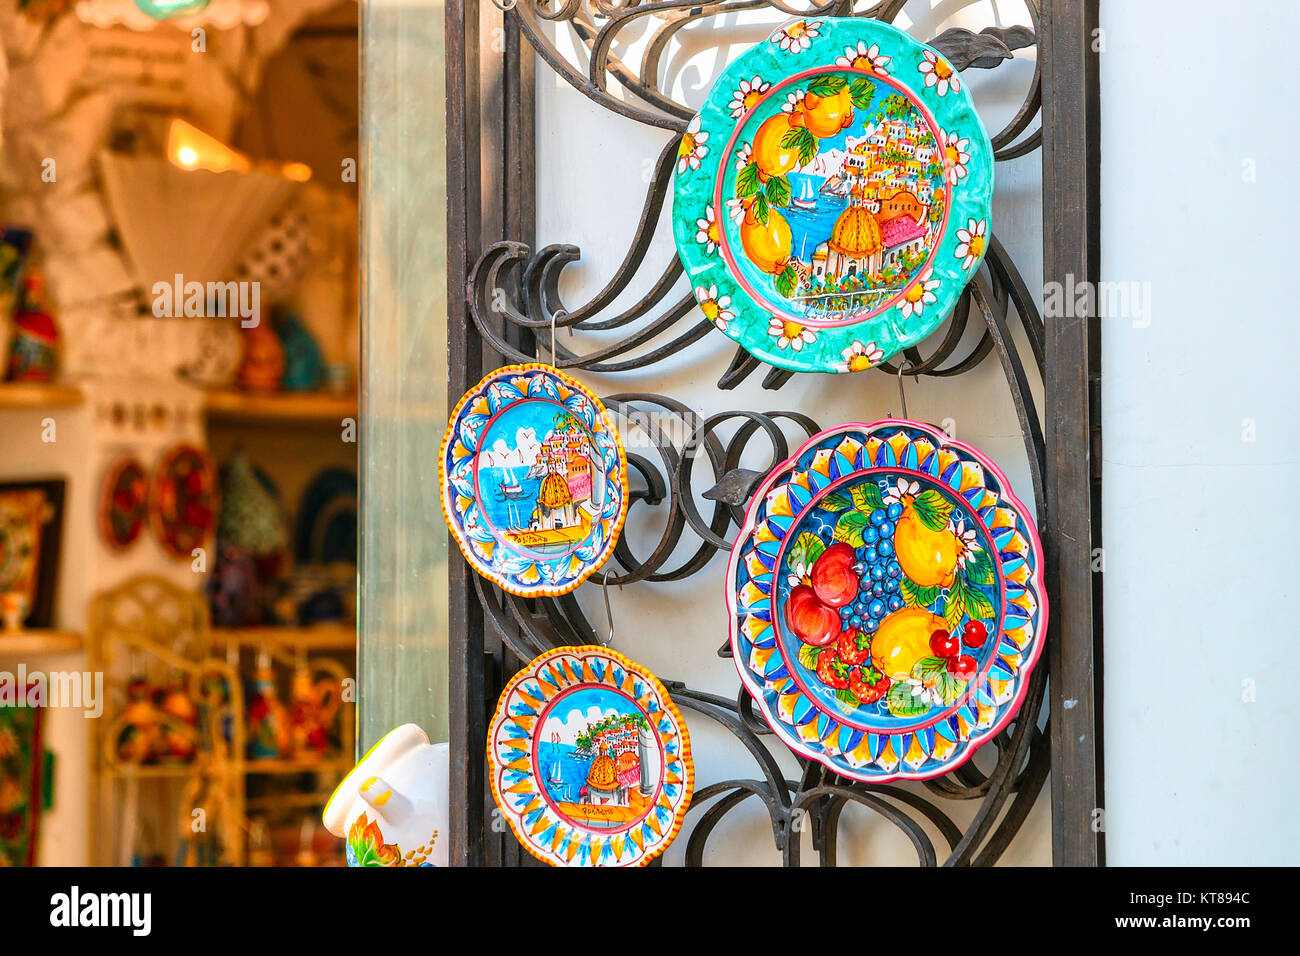 Positano, Italie - 30 septembre 2017 : plaques en céramique colorée traditionnelle faite d'argile sur l'affichage dans la ville de Positano, Amalfi coast, Italie Banque D'Images